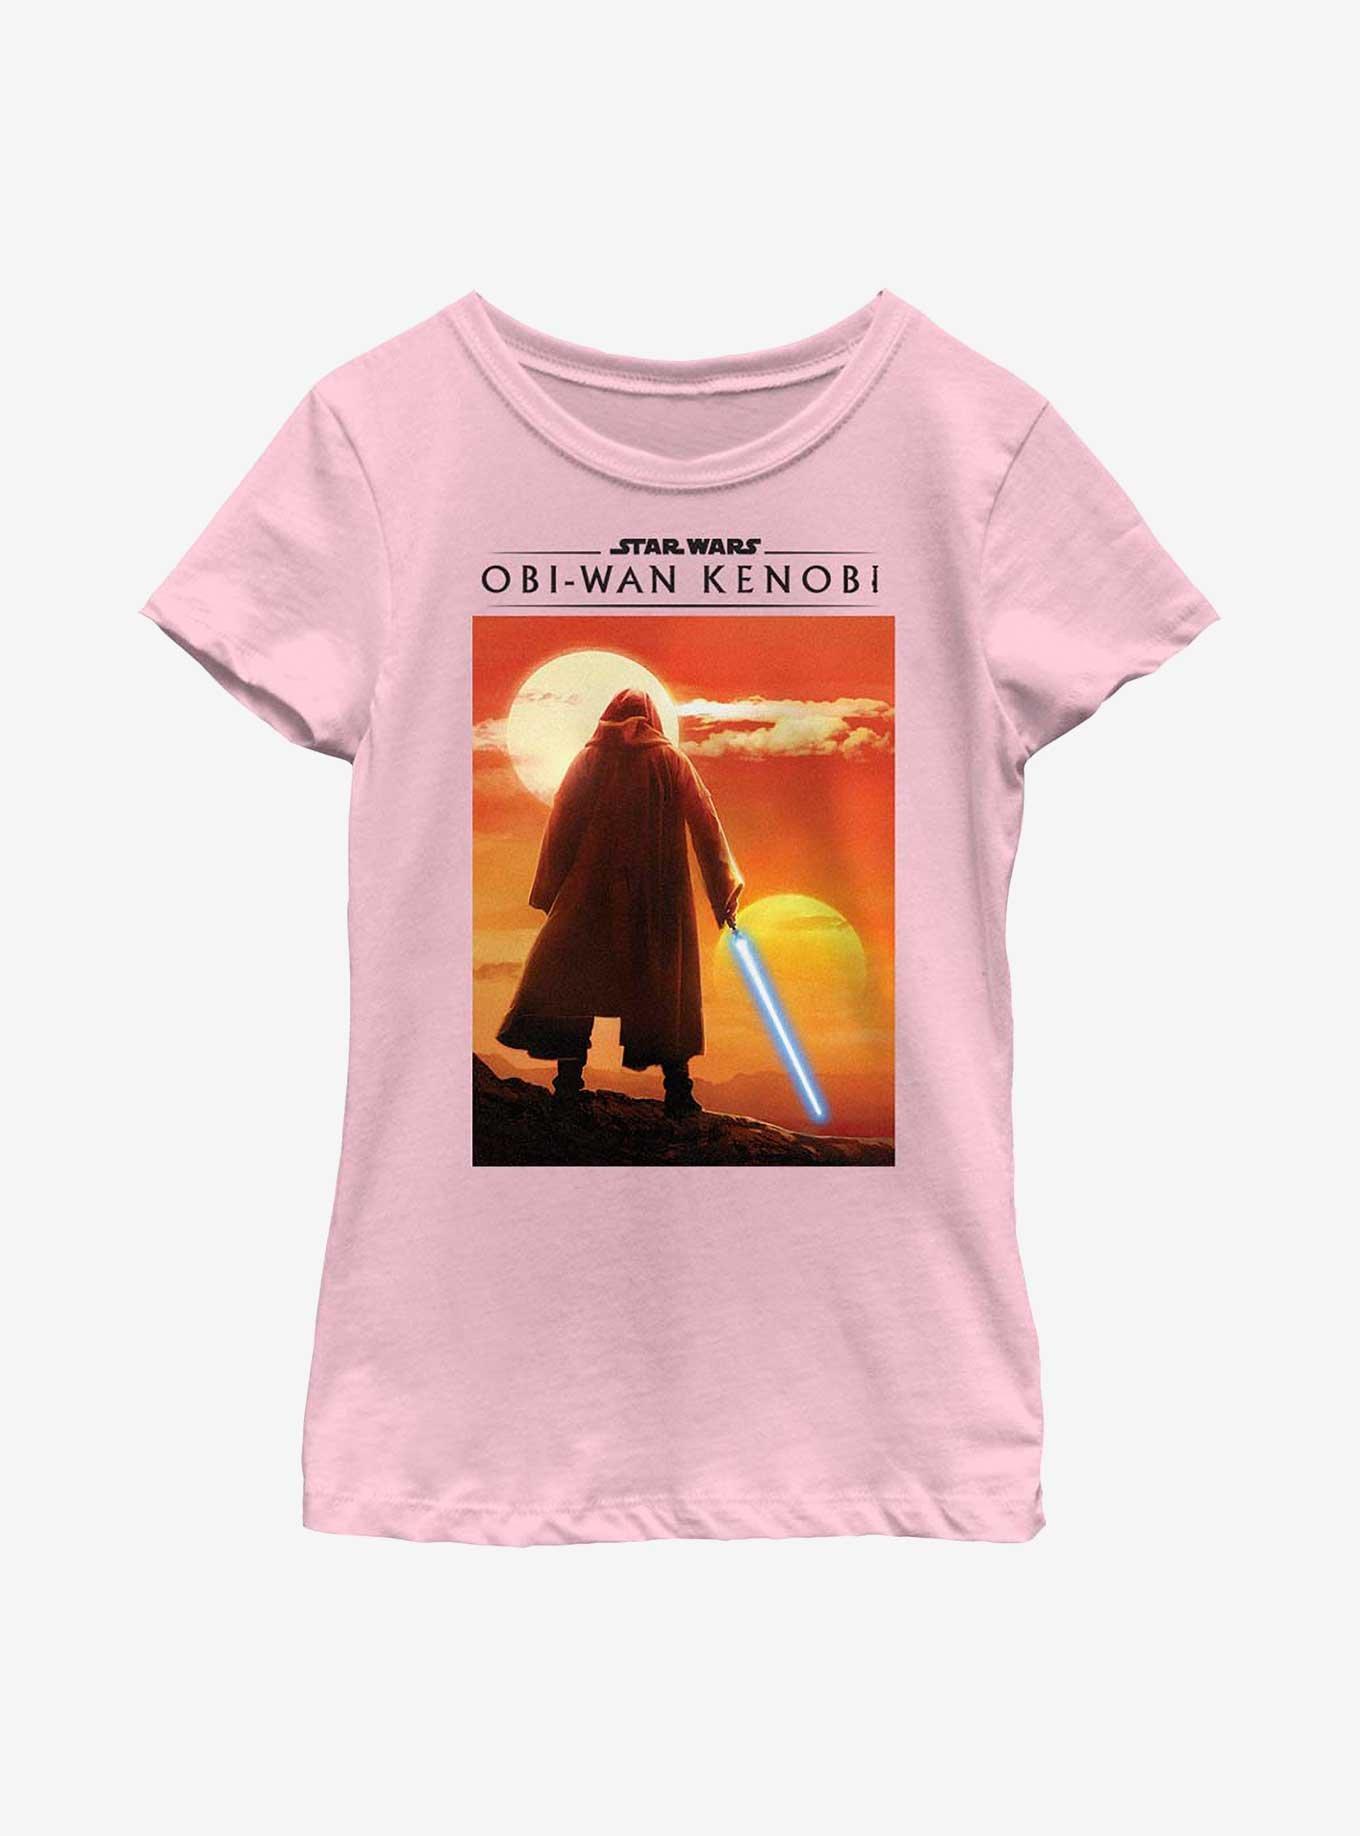 Star Wars Obi-Wan Kenobi Two Suns Youth Girls T-Shirt, PINK, hi-res